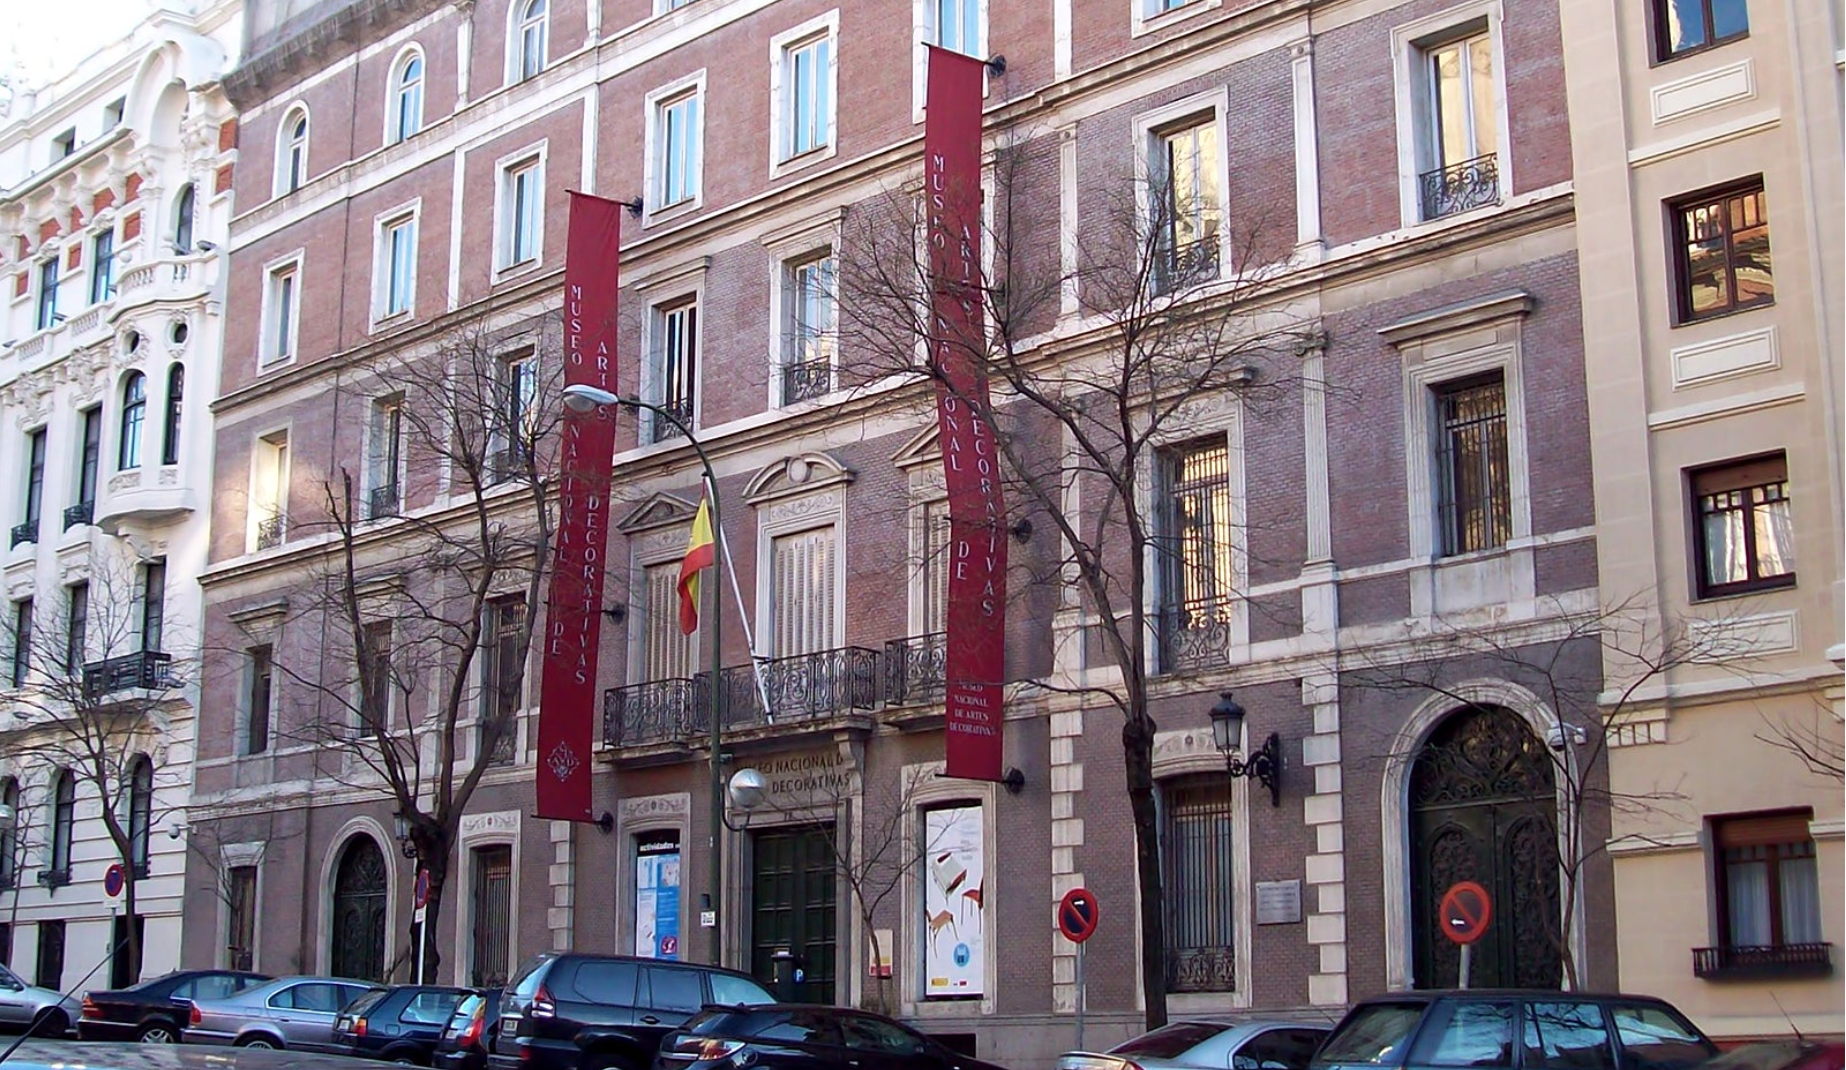 Museo Nacional de Artes Decorativas, Madrid